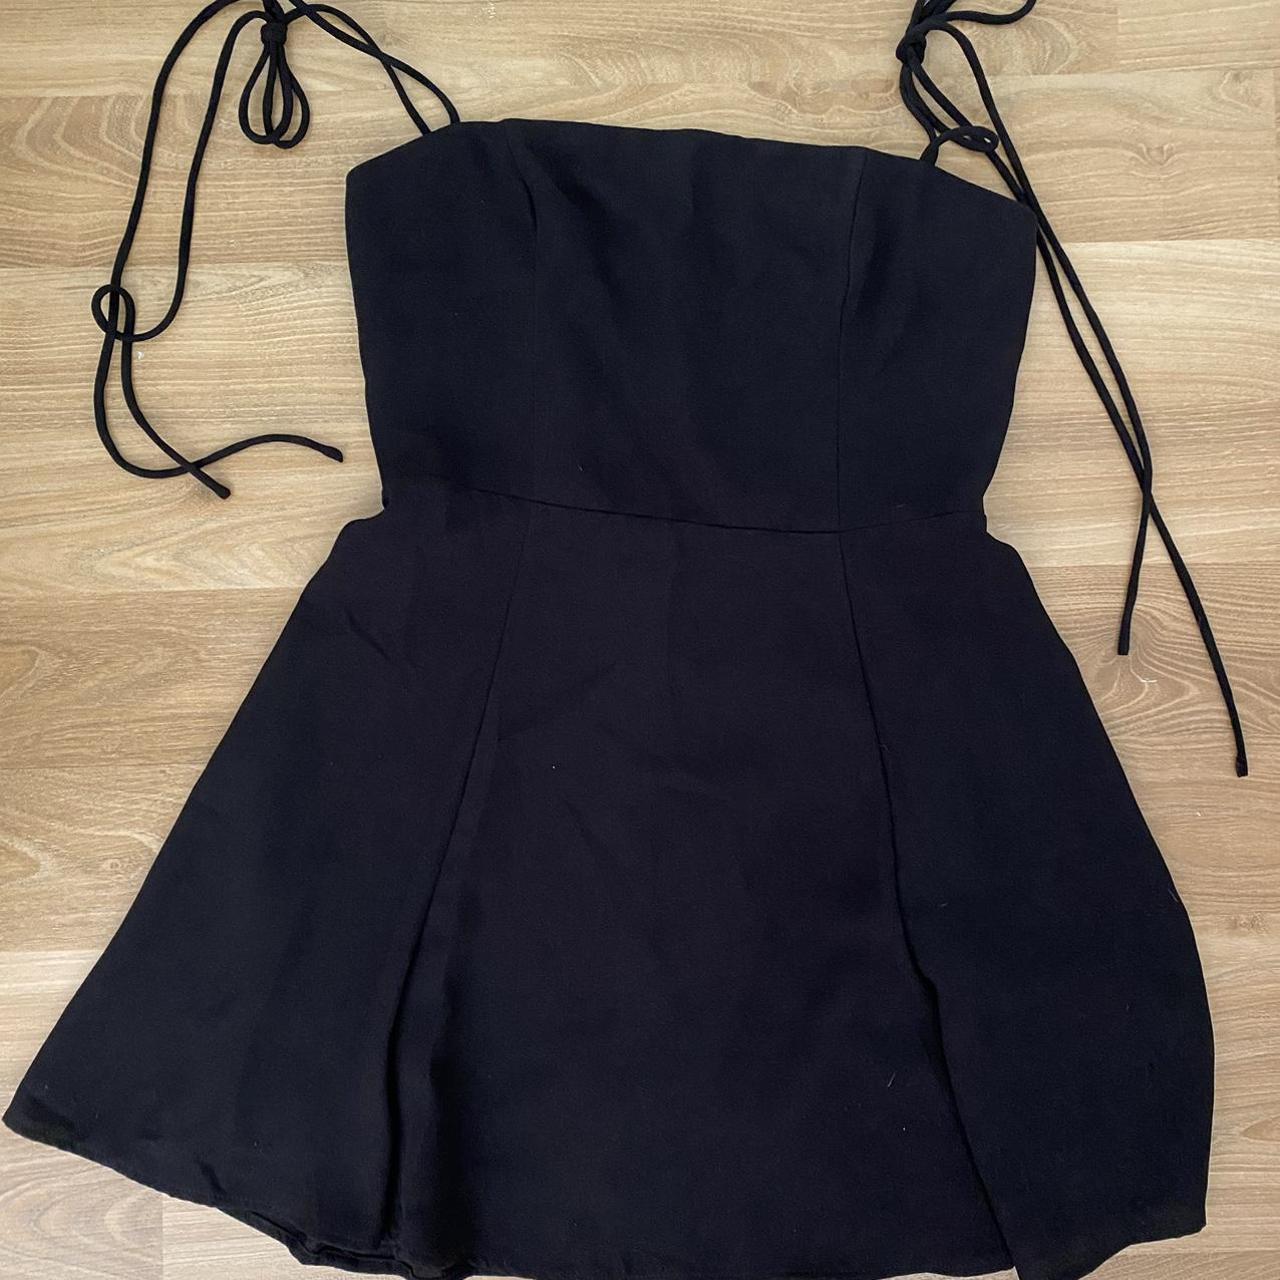 Slide Show little black dress AU size 12 (smaller... - Depop